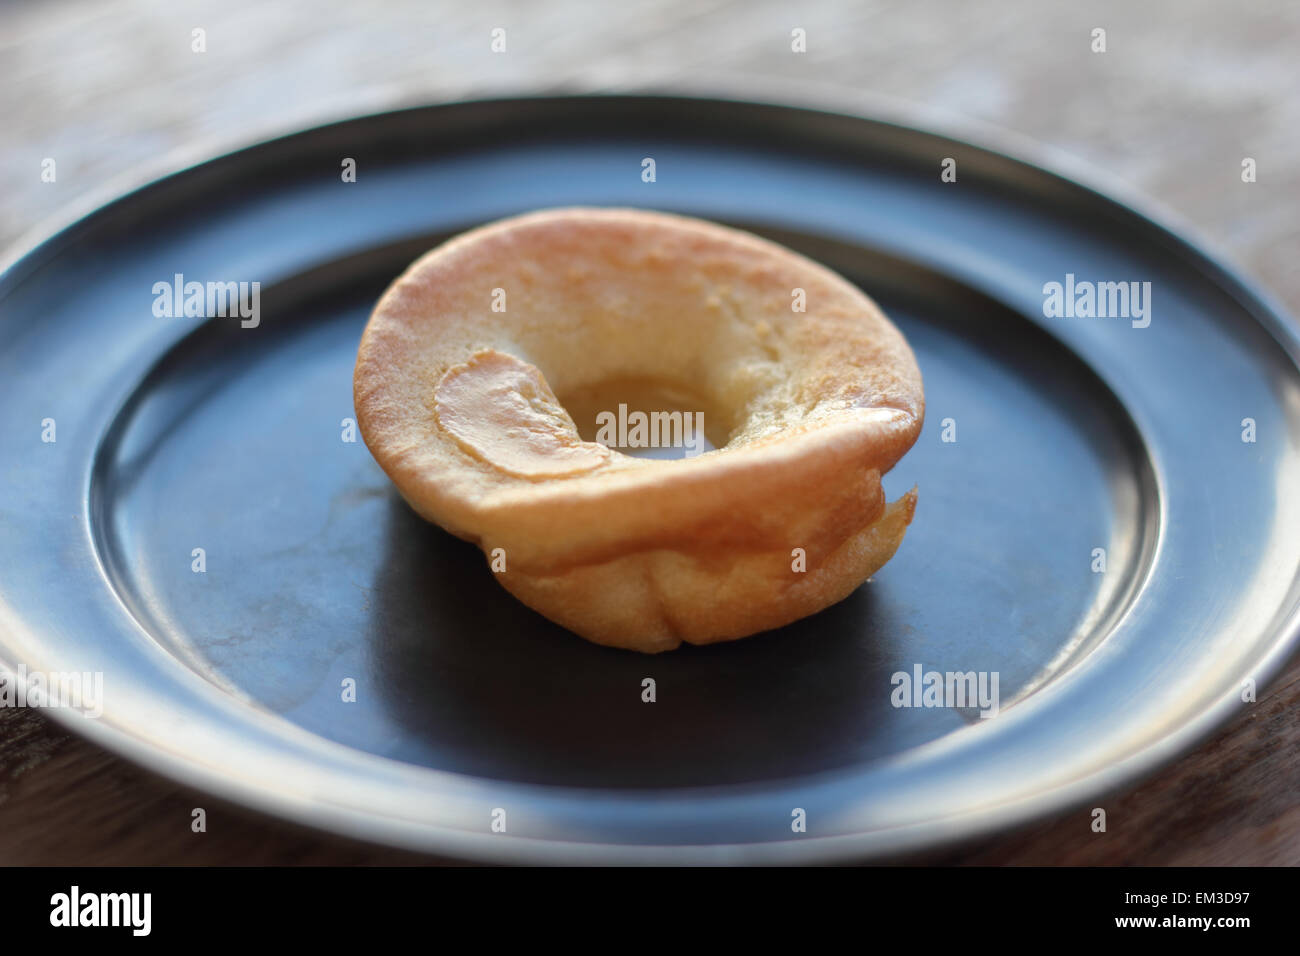 https://c8.alamy.com/comp/EM3D97/yorkshire-pudding-sprinkled-with-sea-salt-and-rosemary-EM3D97.jpg